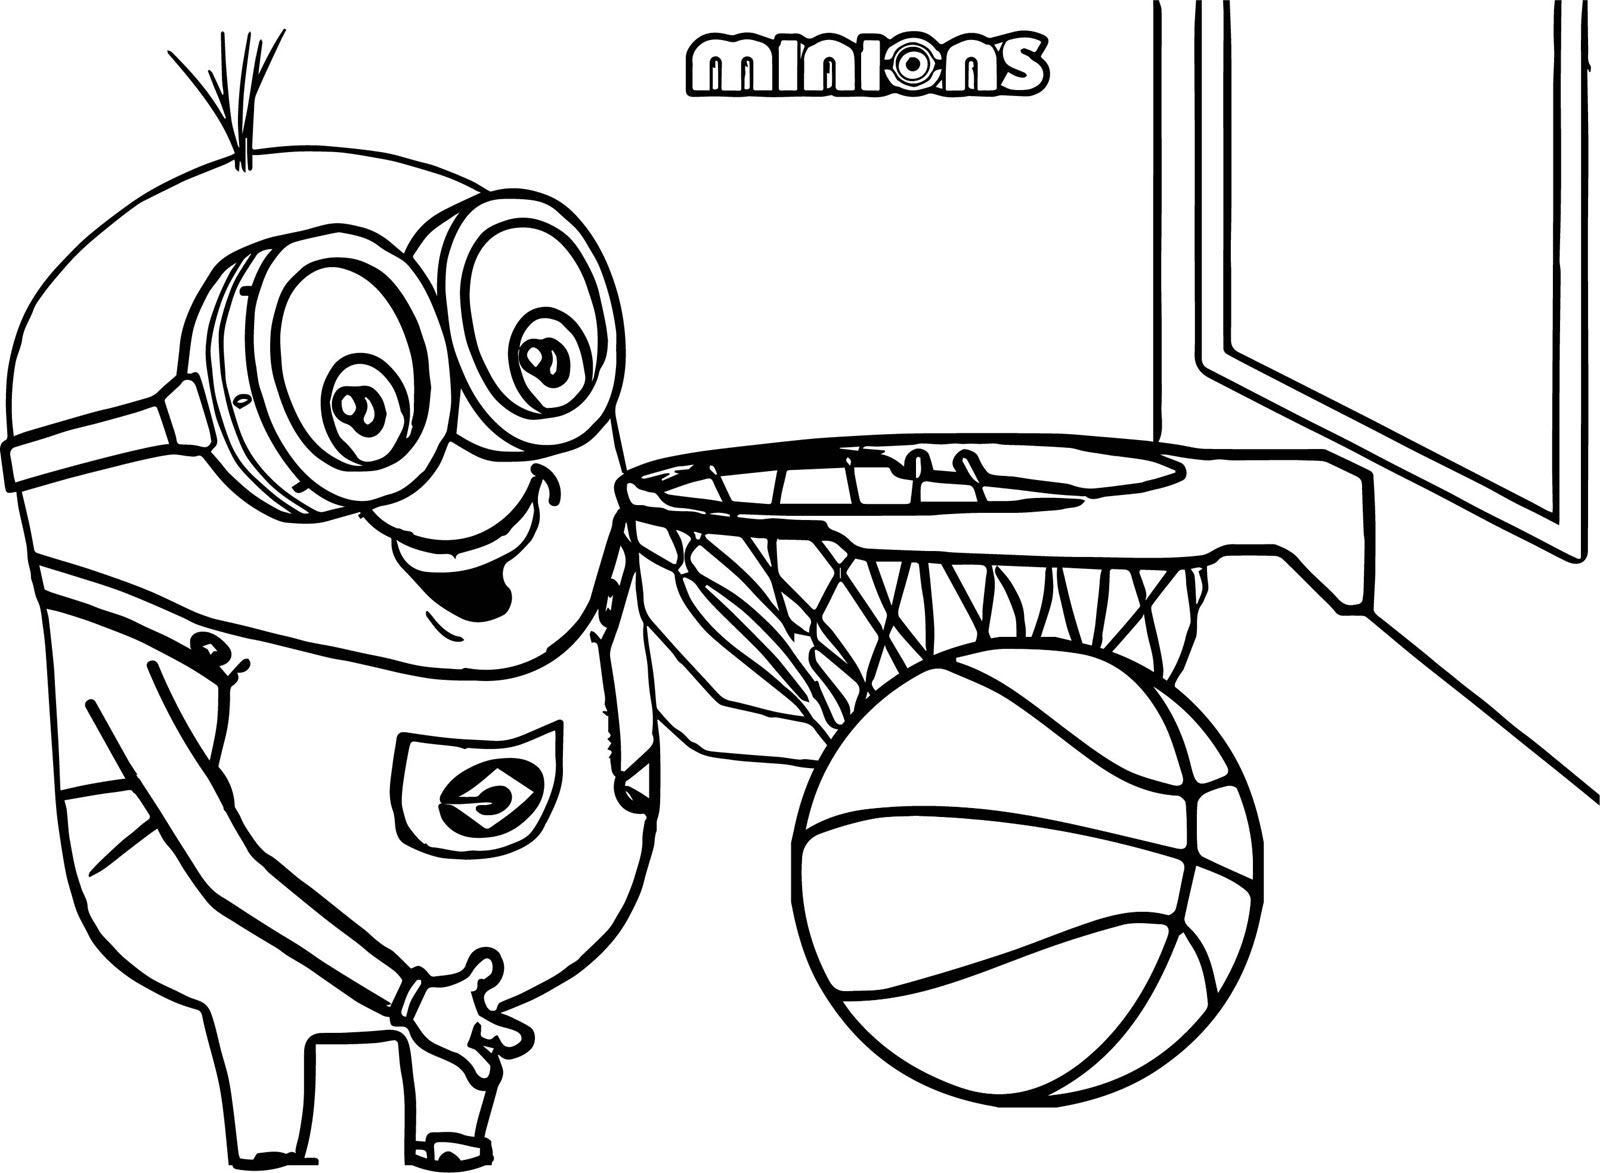 Tranh tô màu chú minion chơi bóng rổ